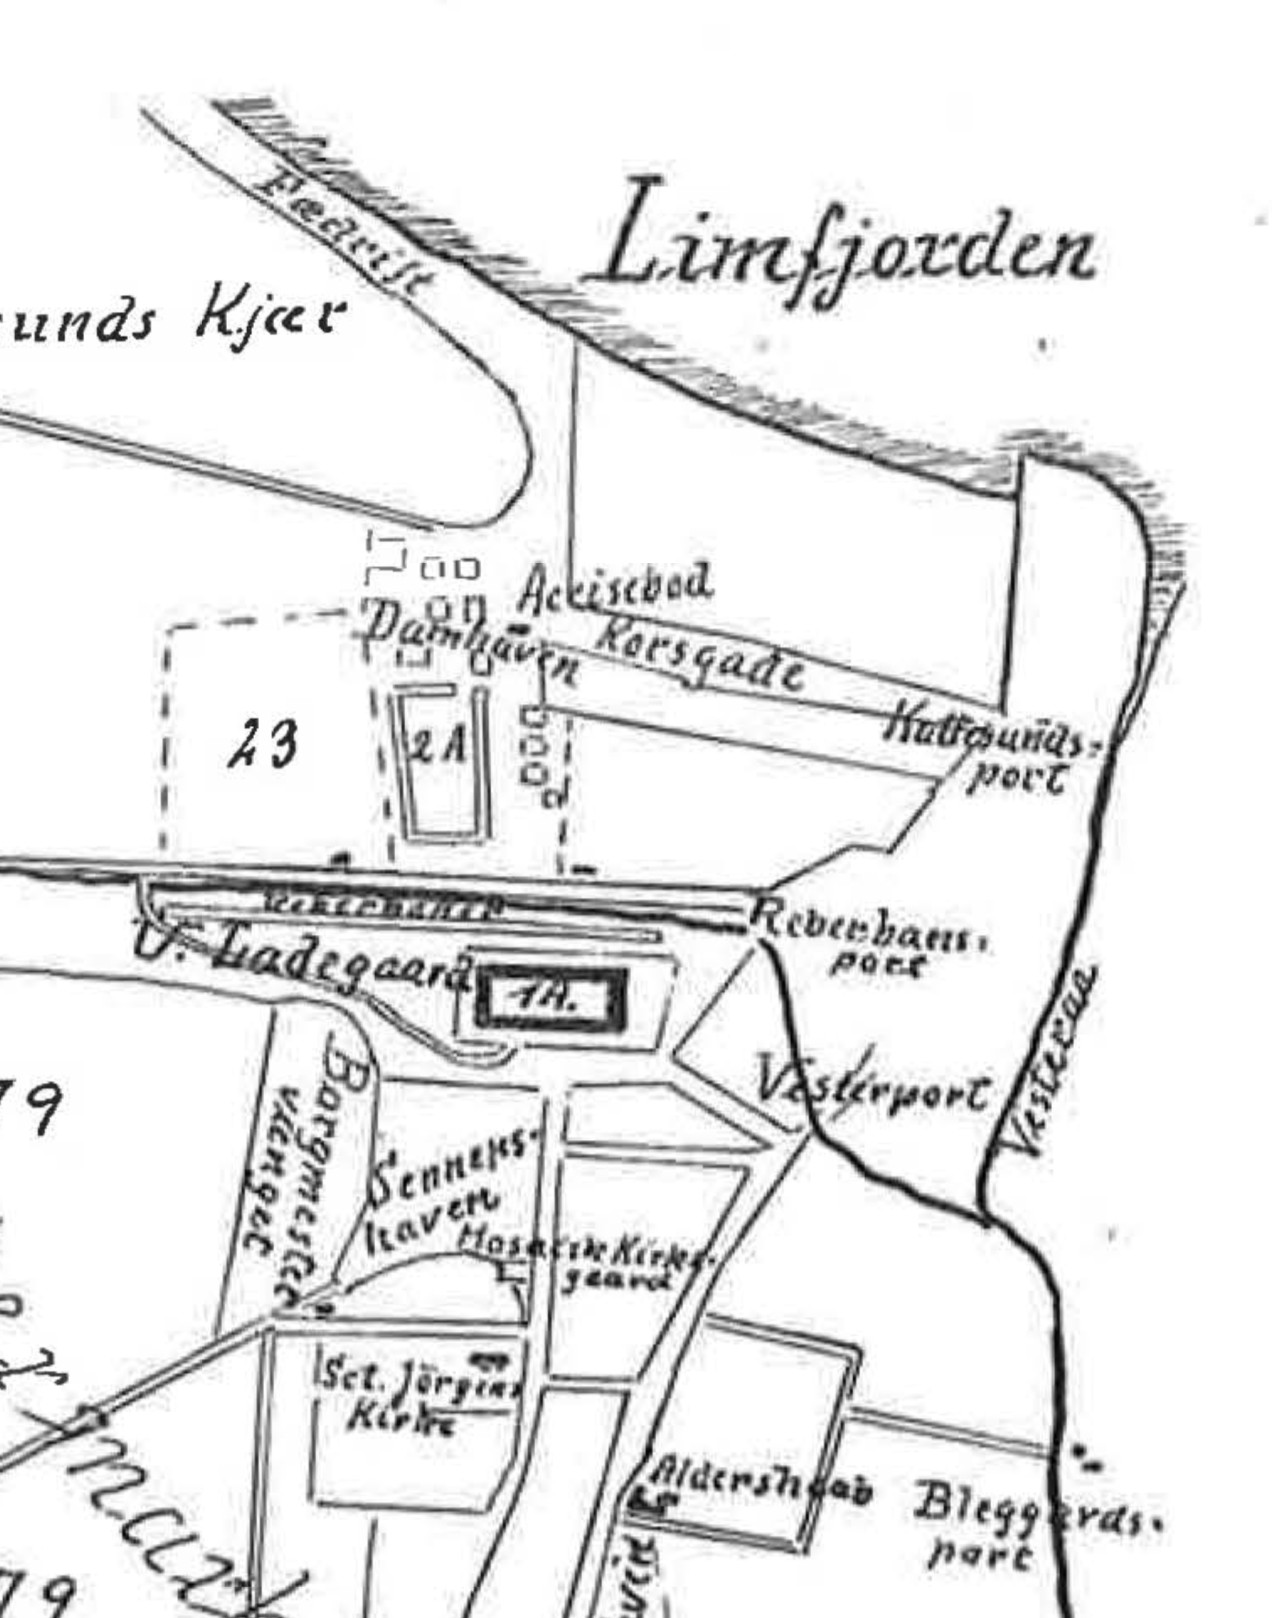 Aalborg Vester Ladegaard matrikelkort ca. 1885